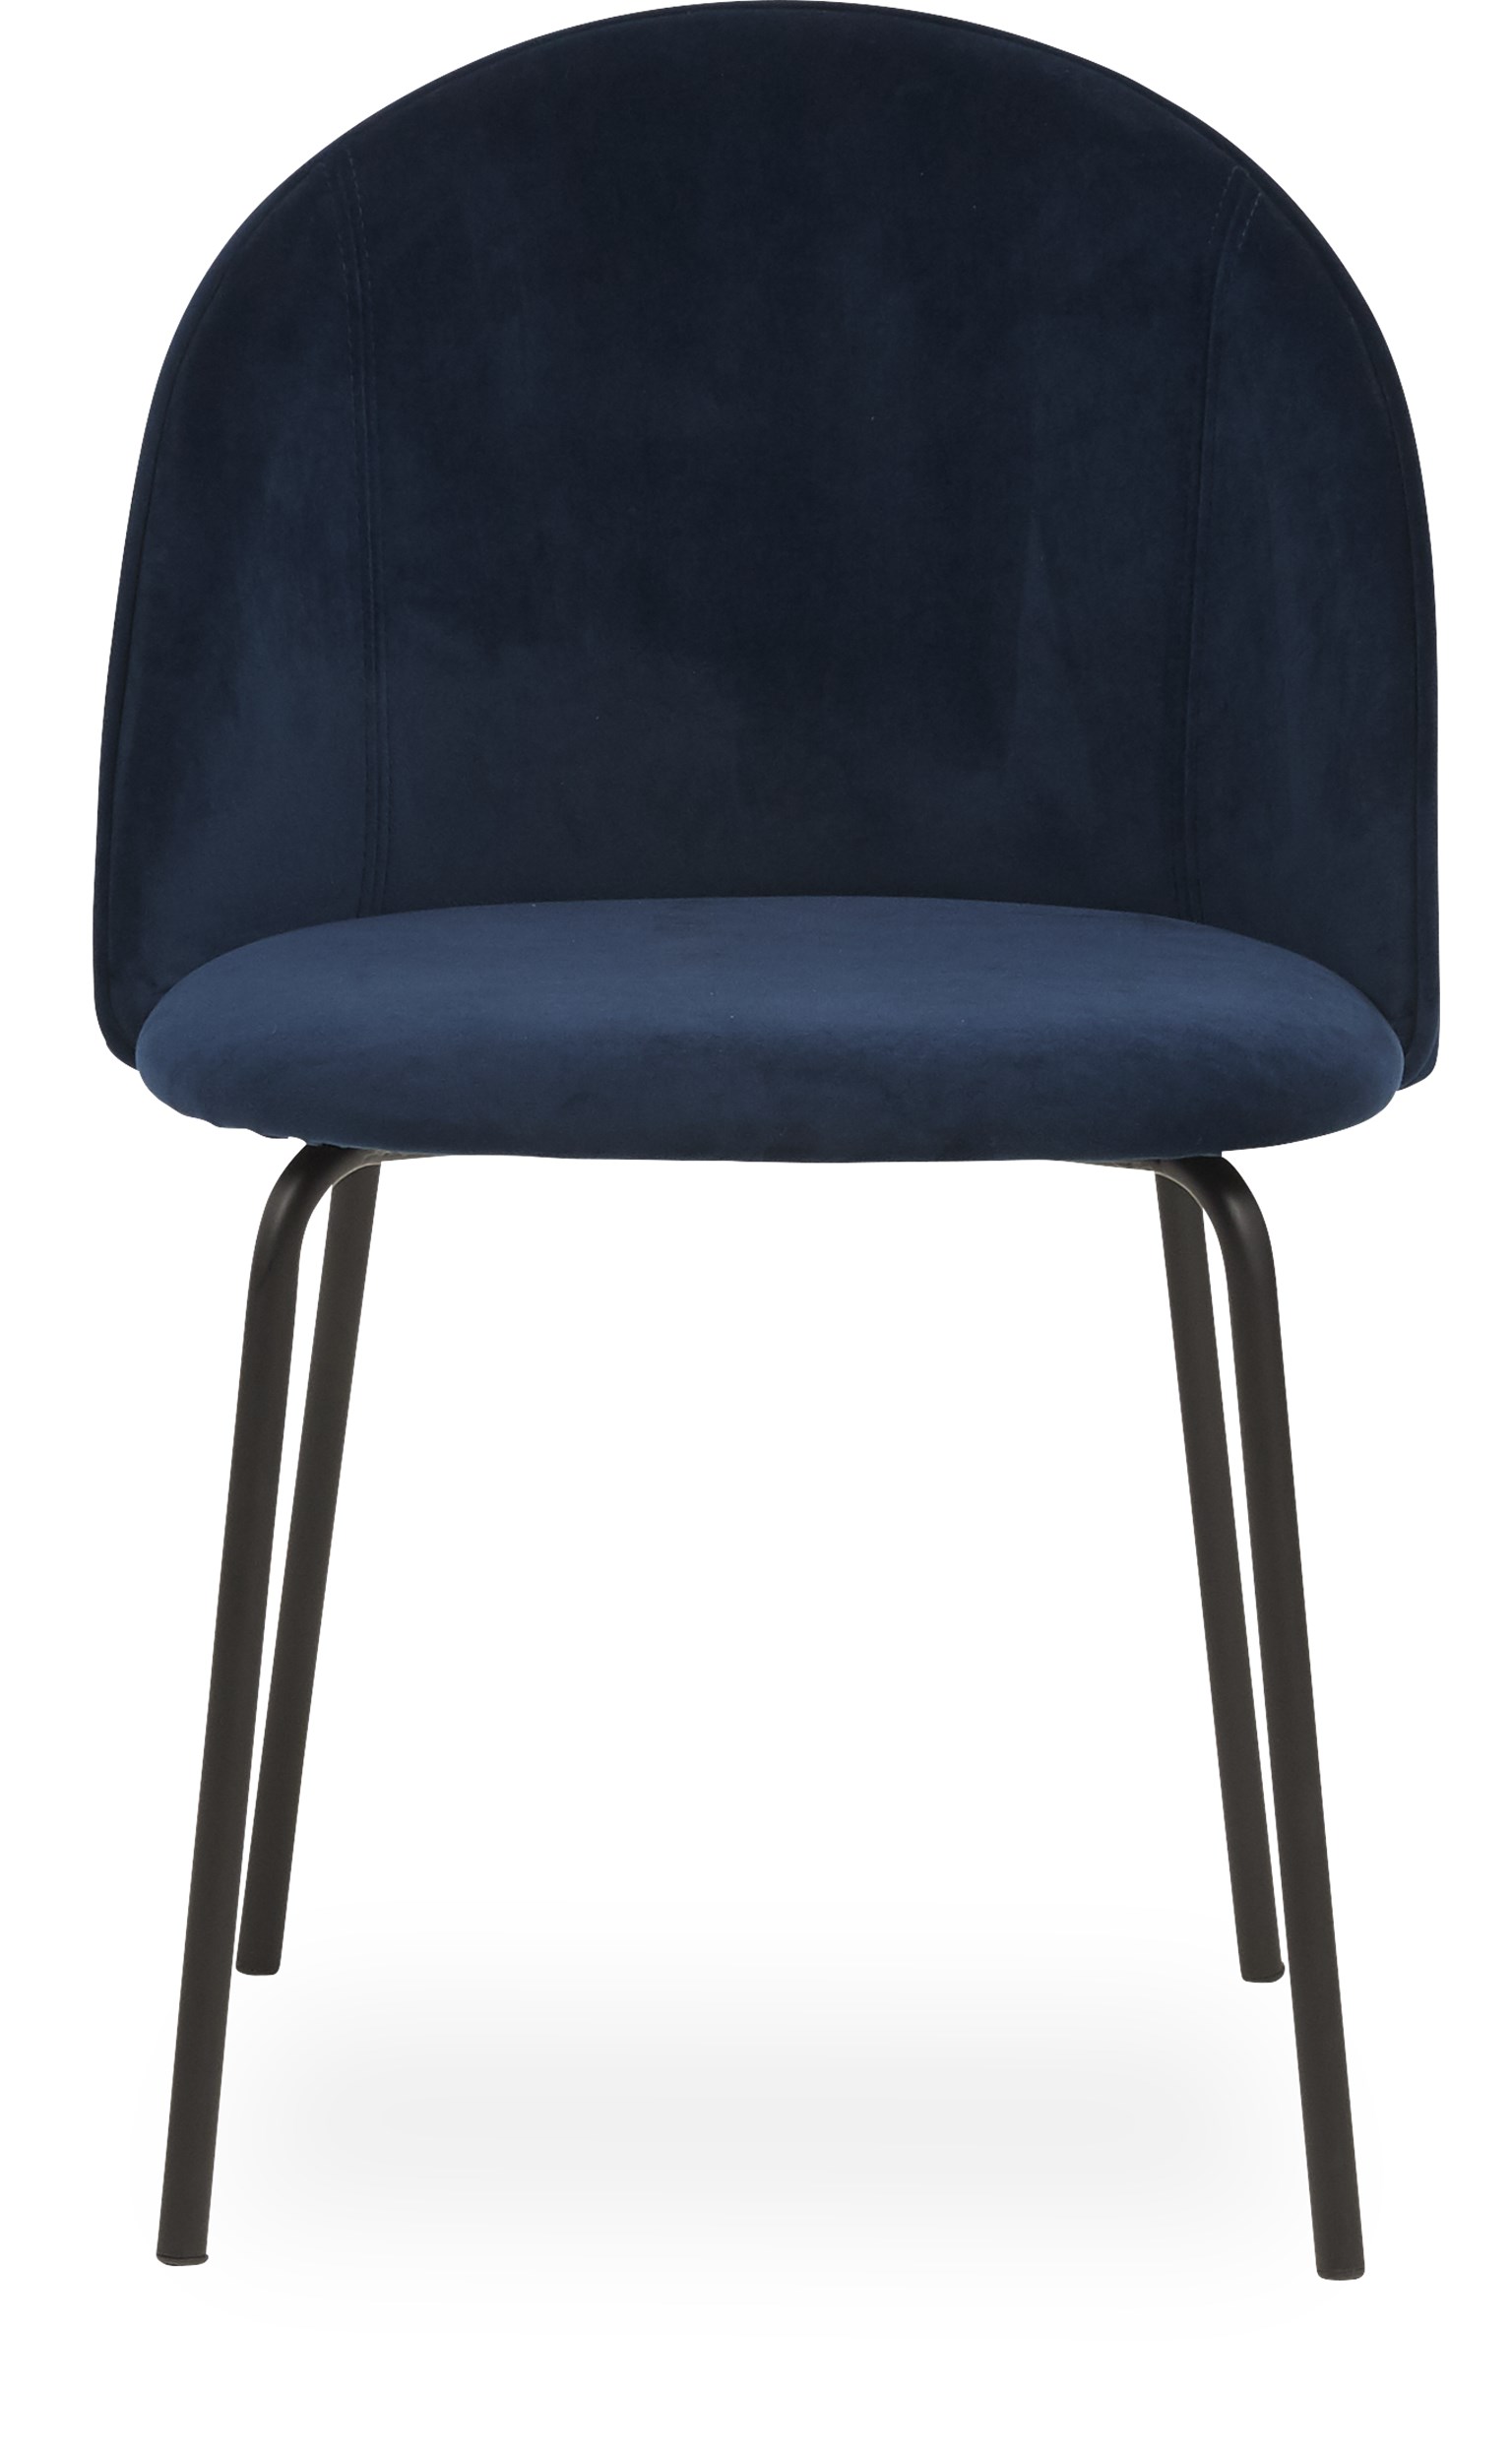 Barnes matstol - Sits i navy blue sammet och ben i svart pulverlackerad metall